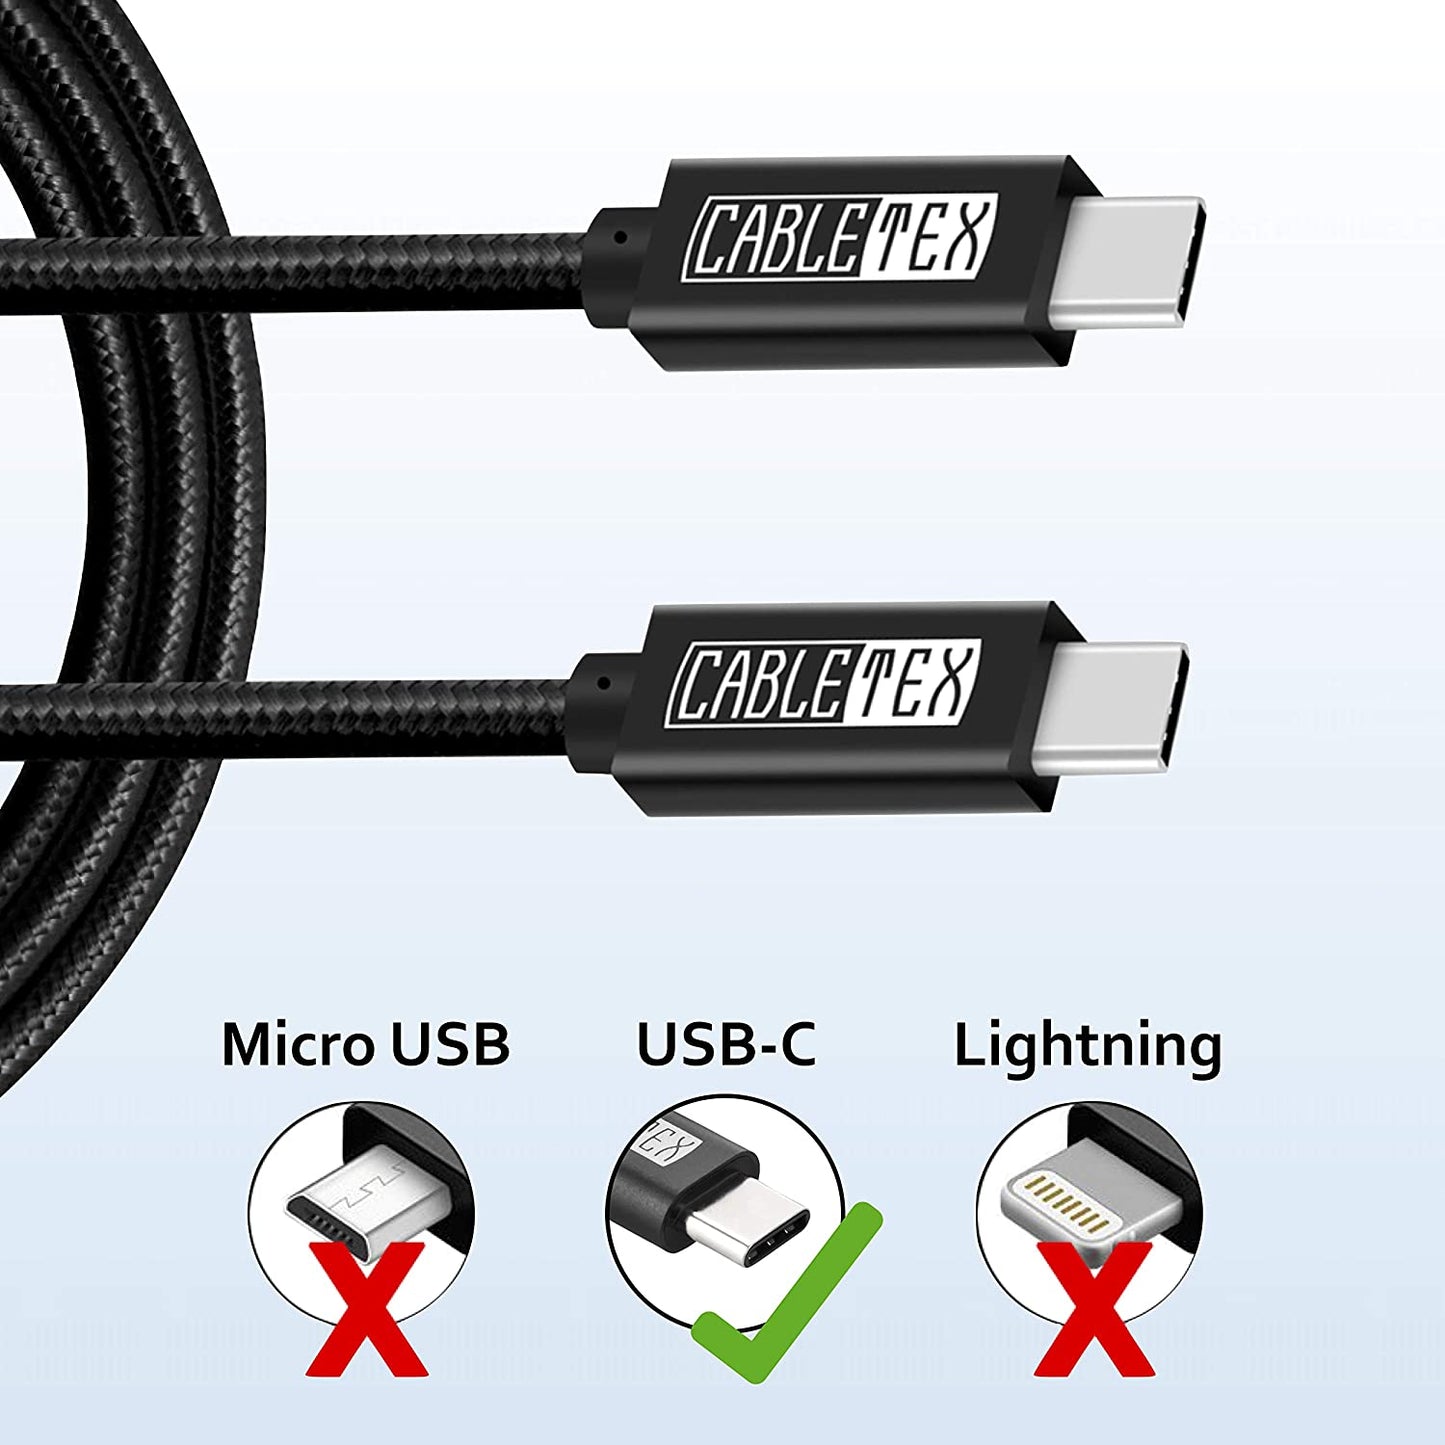 USB-C Monitorkabel | für Thunderbolt 3 Displays | USB 3.2 Gen2 | 4K@60Hz, 10GBit/s, 100W Power Delivery | Videoübertragung